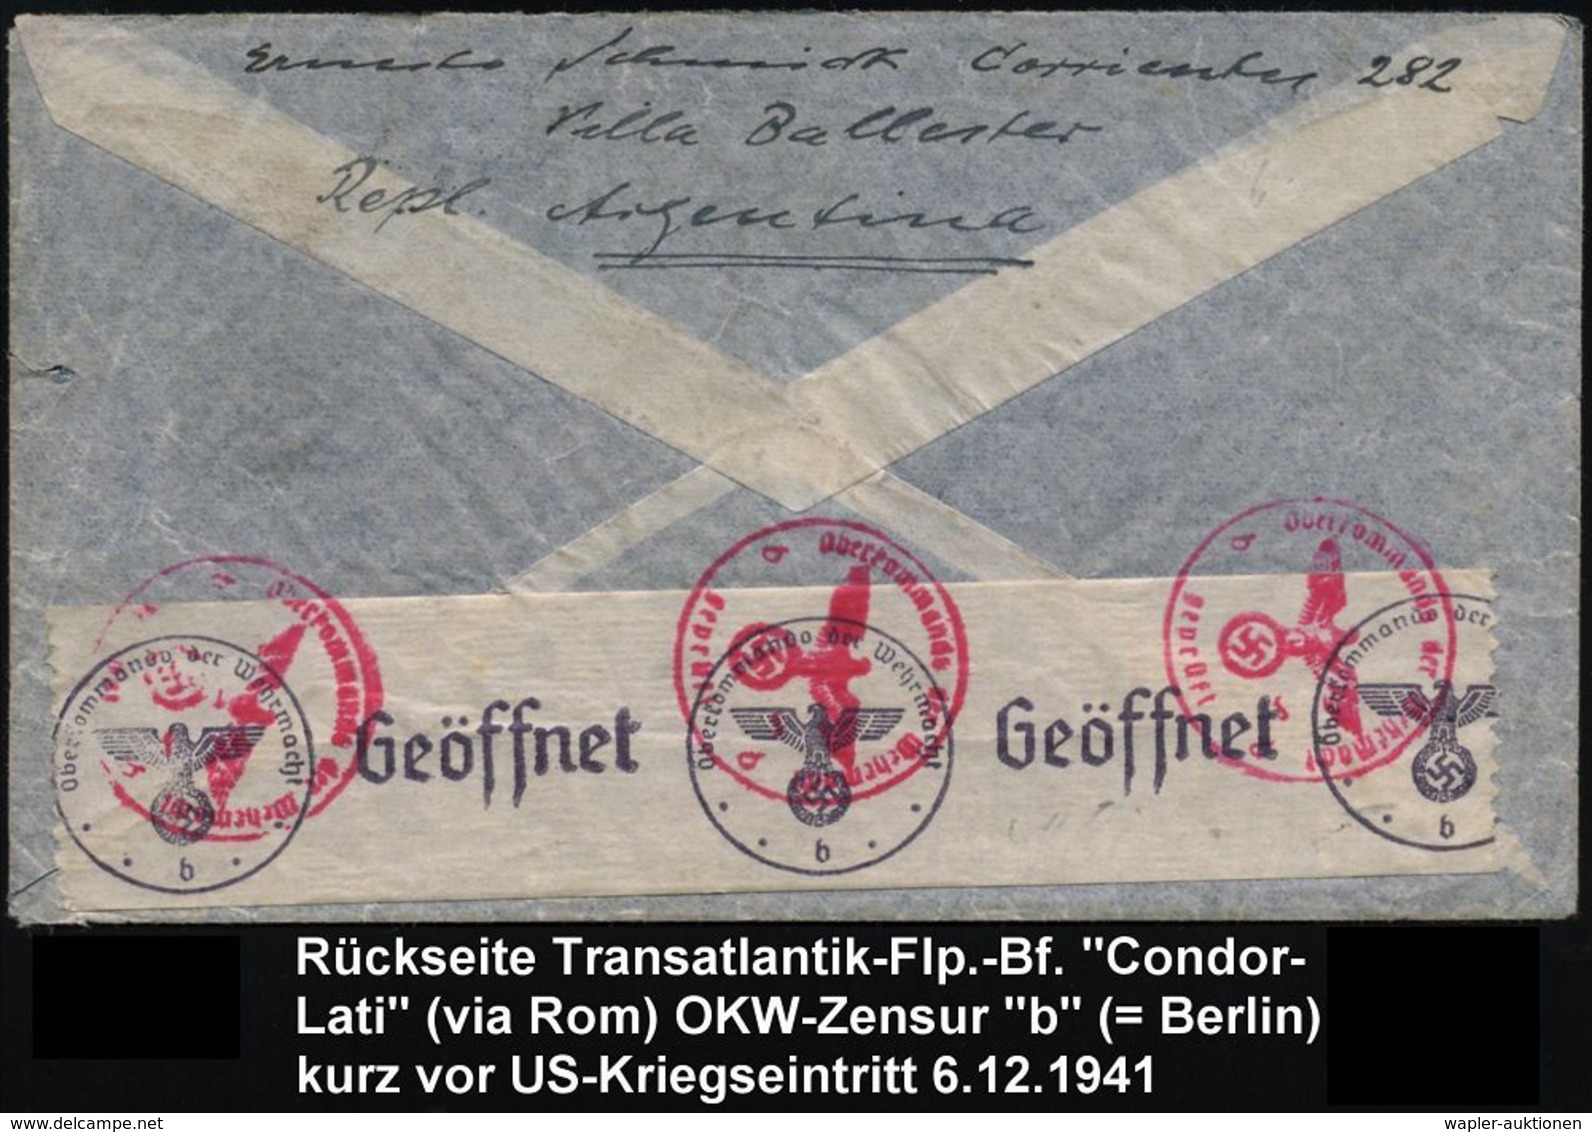 ARGENTINIEN 1941 (12.11.) Flp. 30 C. U. 1 Peso Etc. (Bf. Kl. Randkerbe), Hs. Zusatz: "Via Condor-Lati" + Rs. OKW-Zensur- - Altri (Aria)